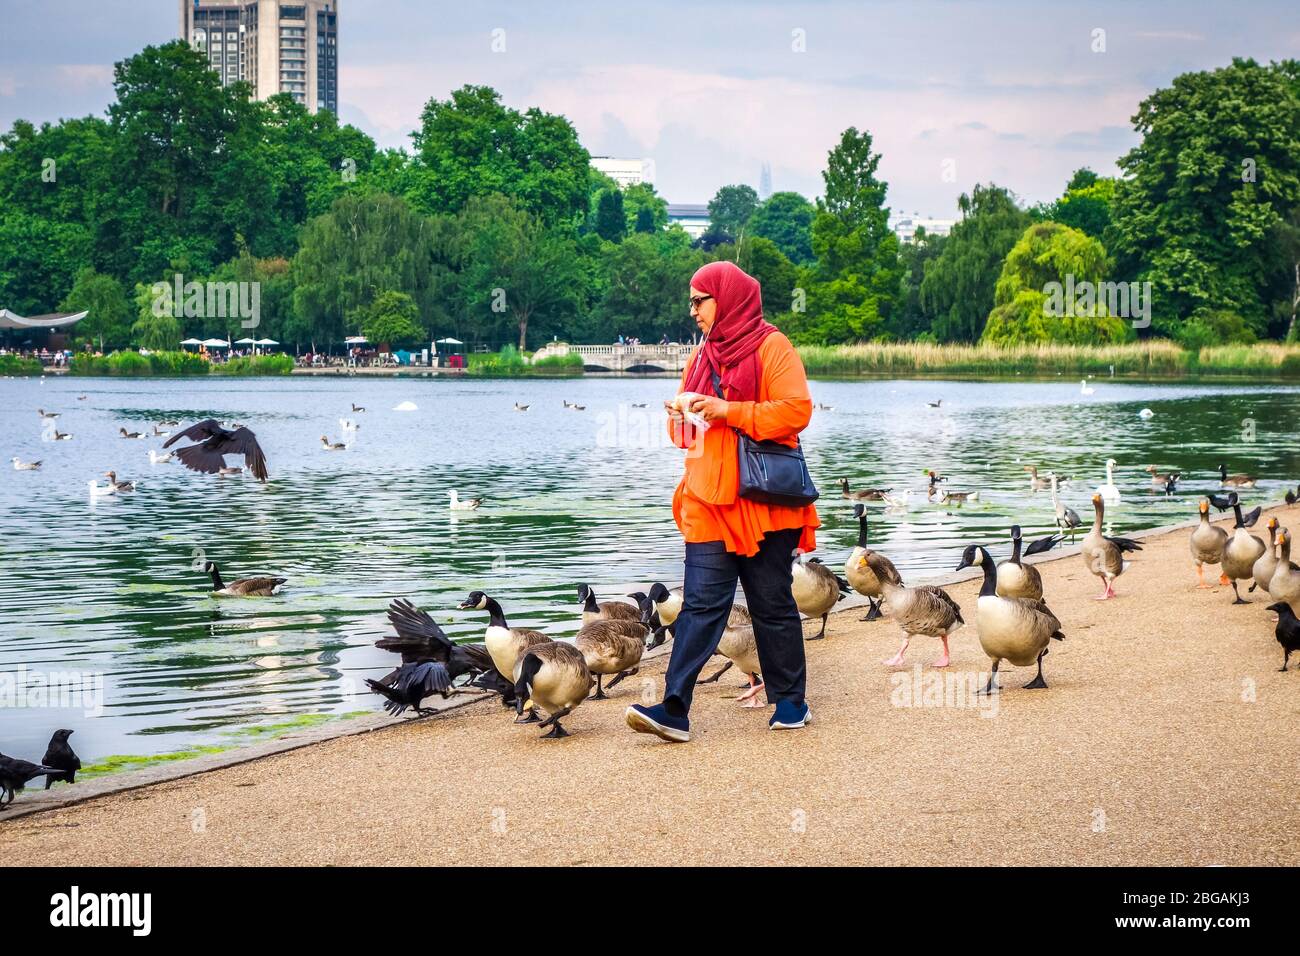 London/UK - June 3, 2017 - Woman feeding ducks in Hide park Stock Photo